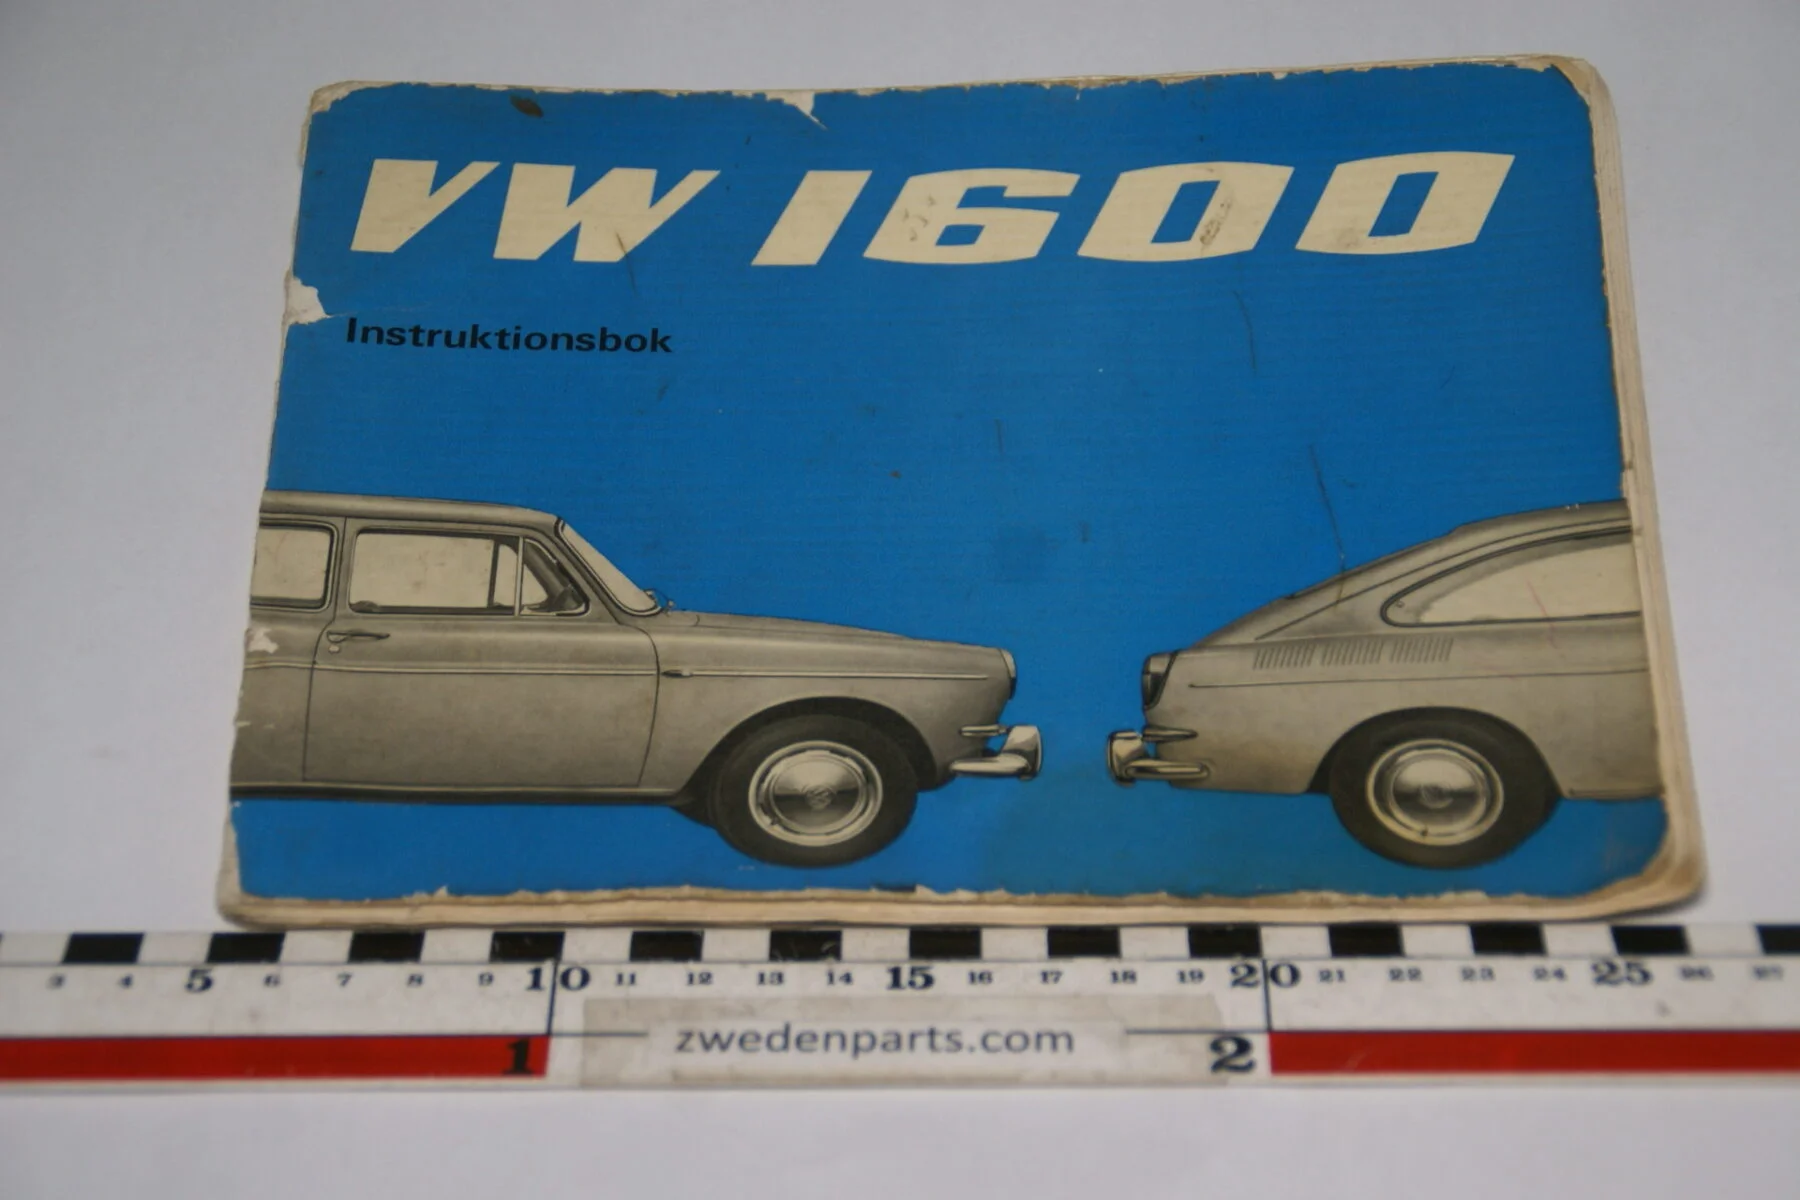 DSC06262 1965 augustus instructieboekje Volkswagen 1600, Svenskt